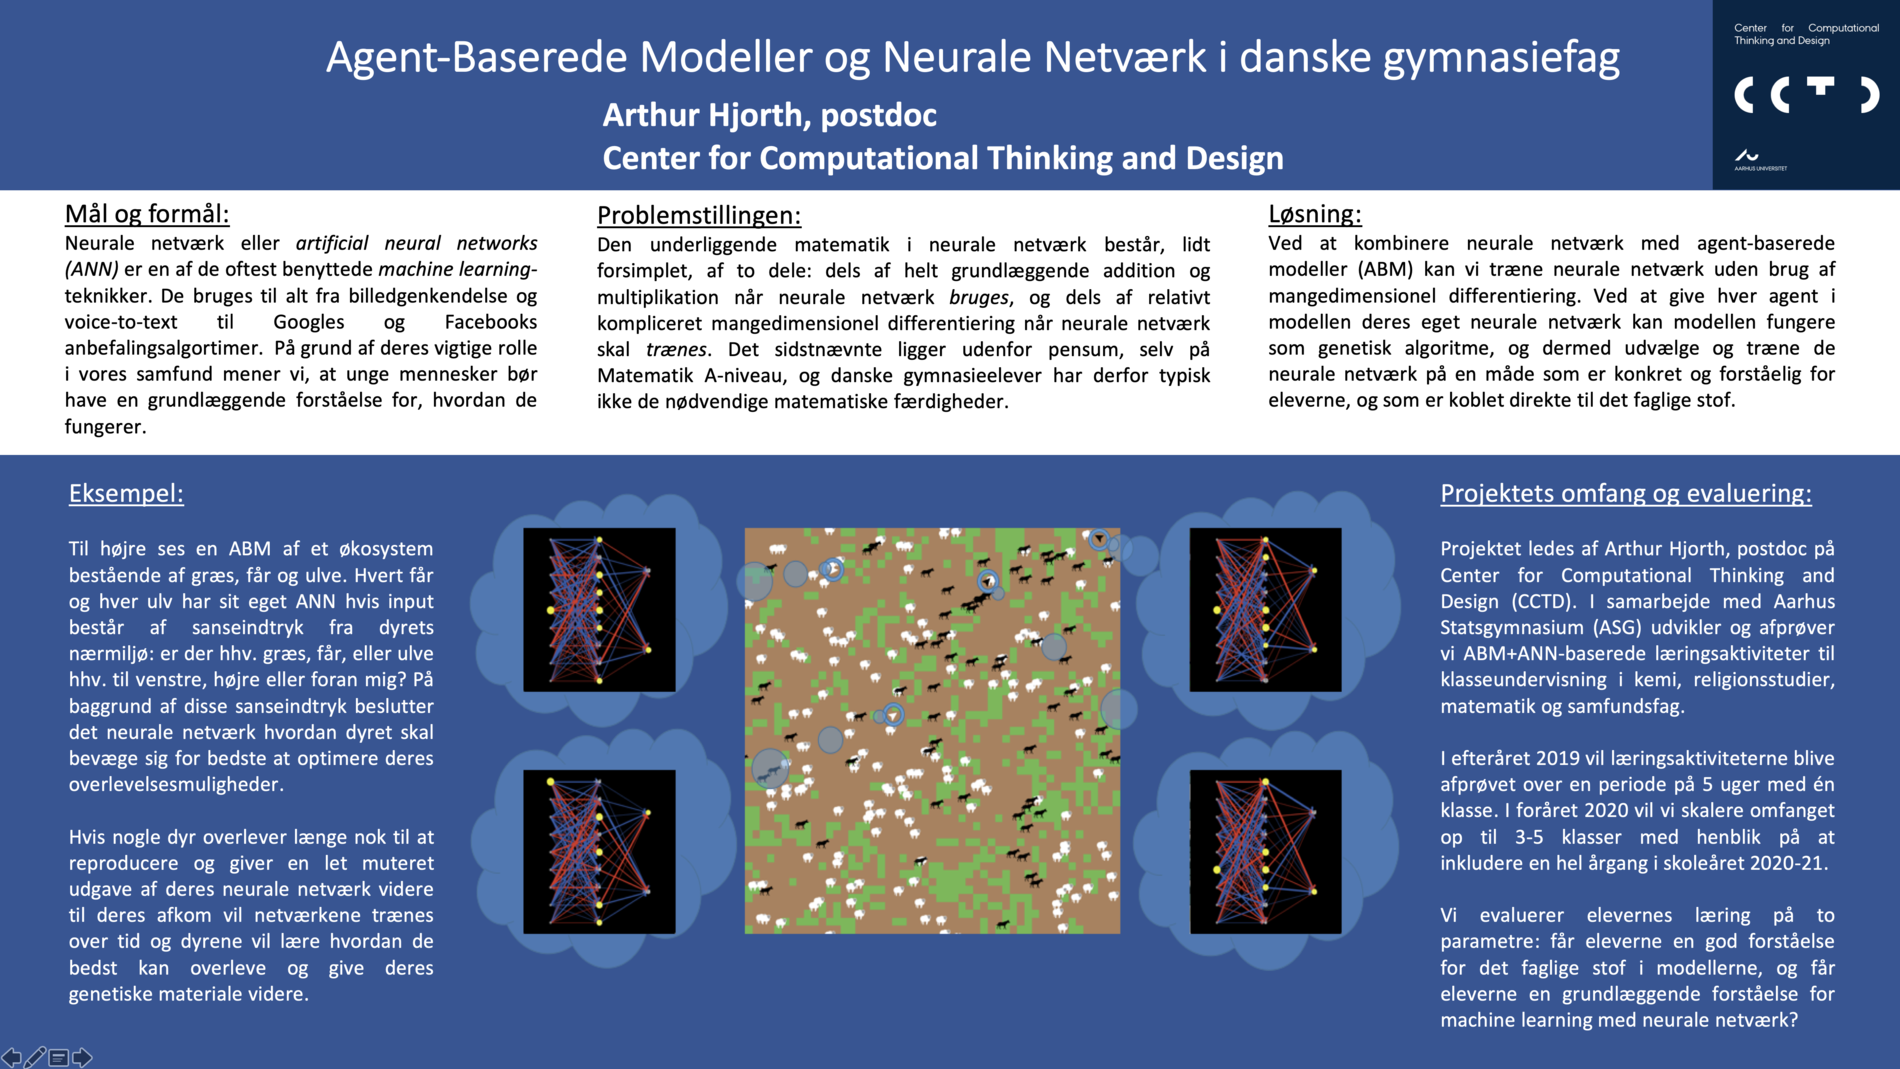 Link til pdf med poster for Agent-baserede modeller og neurale netværk i danske gymnasiefag, AU